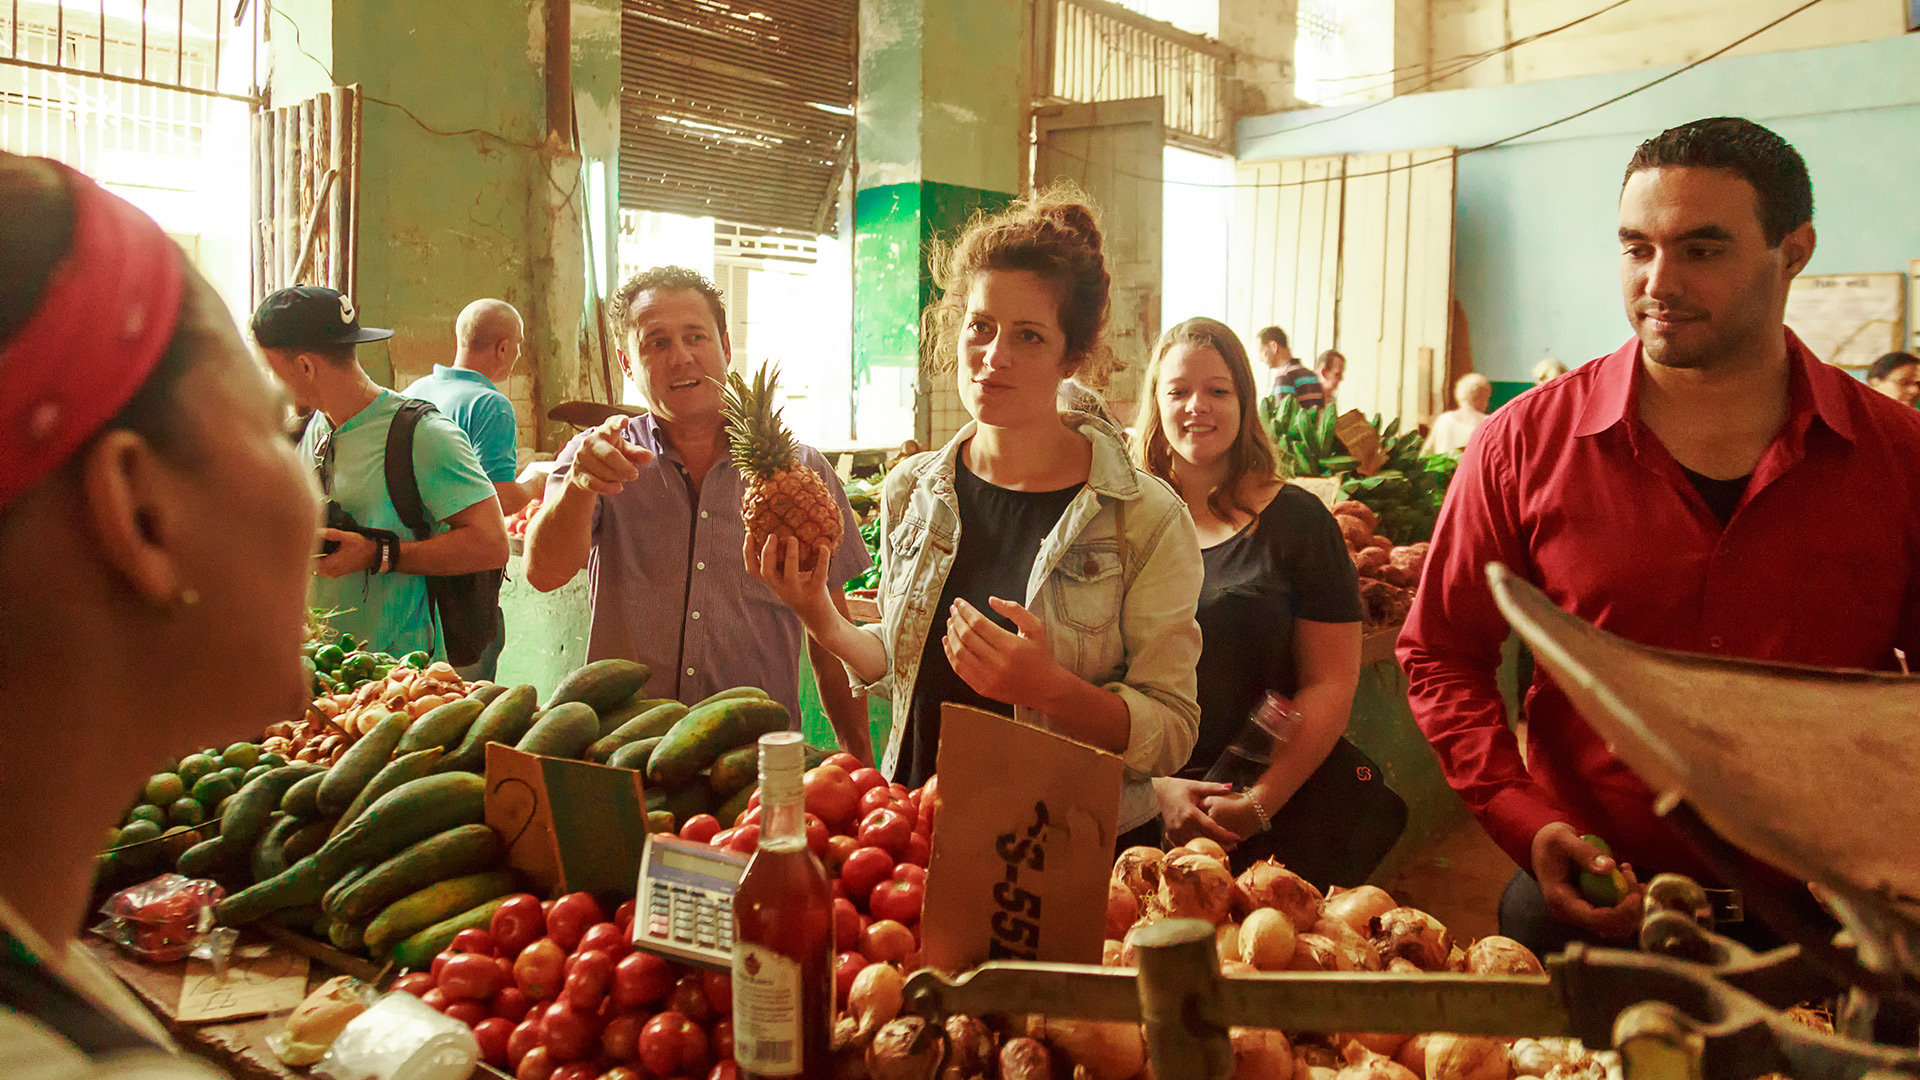 Mercado local de frutas y verduras en La Habana, Cuba